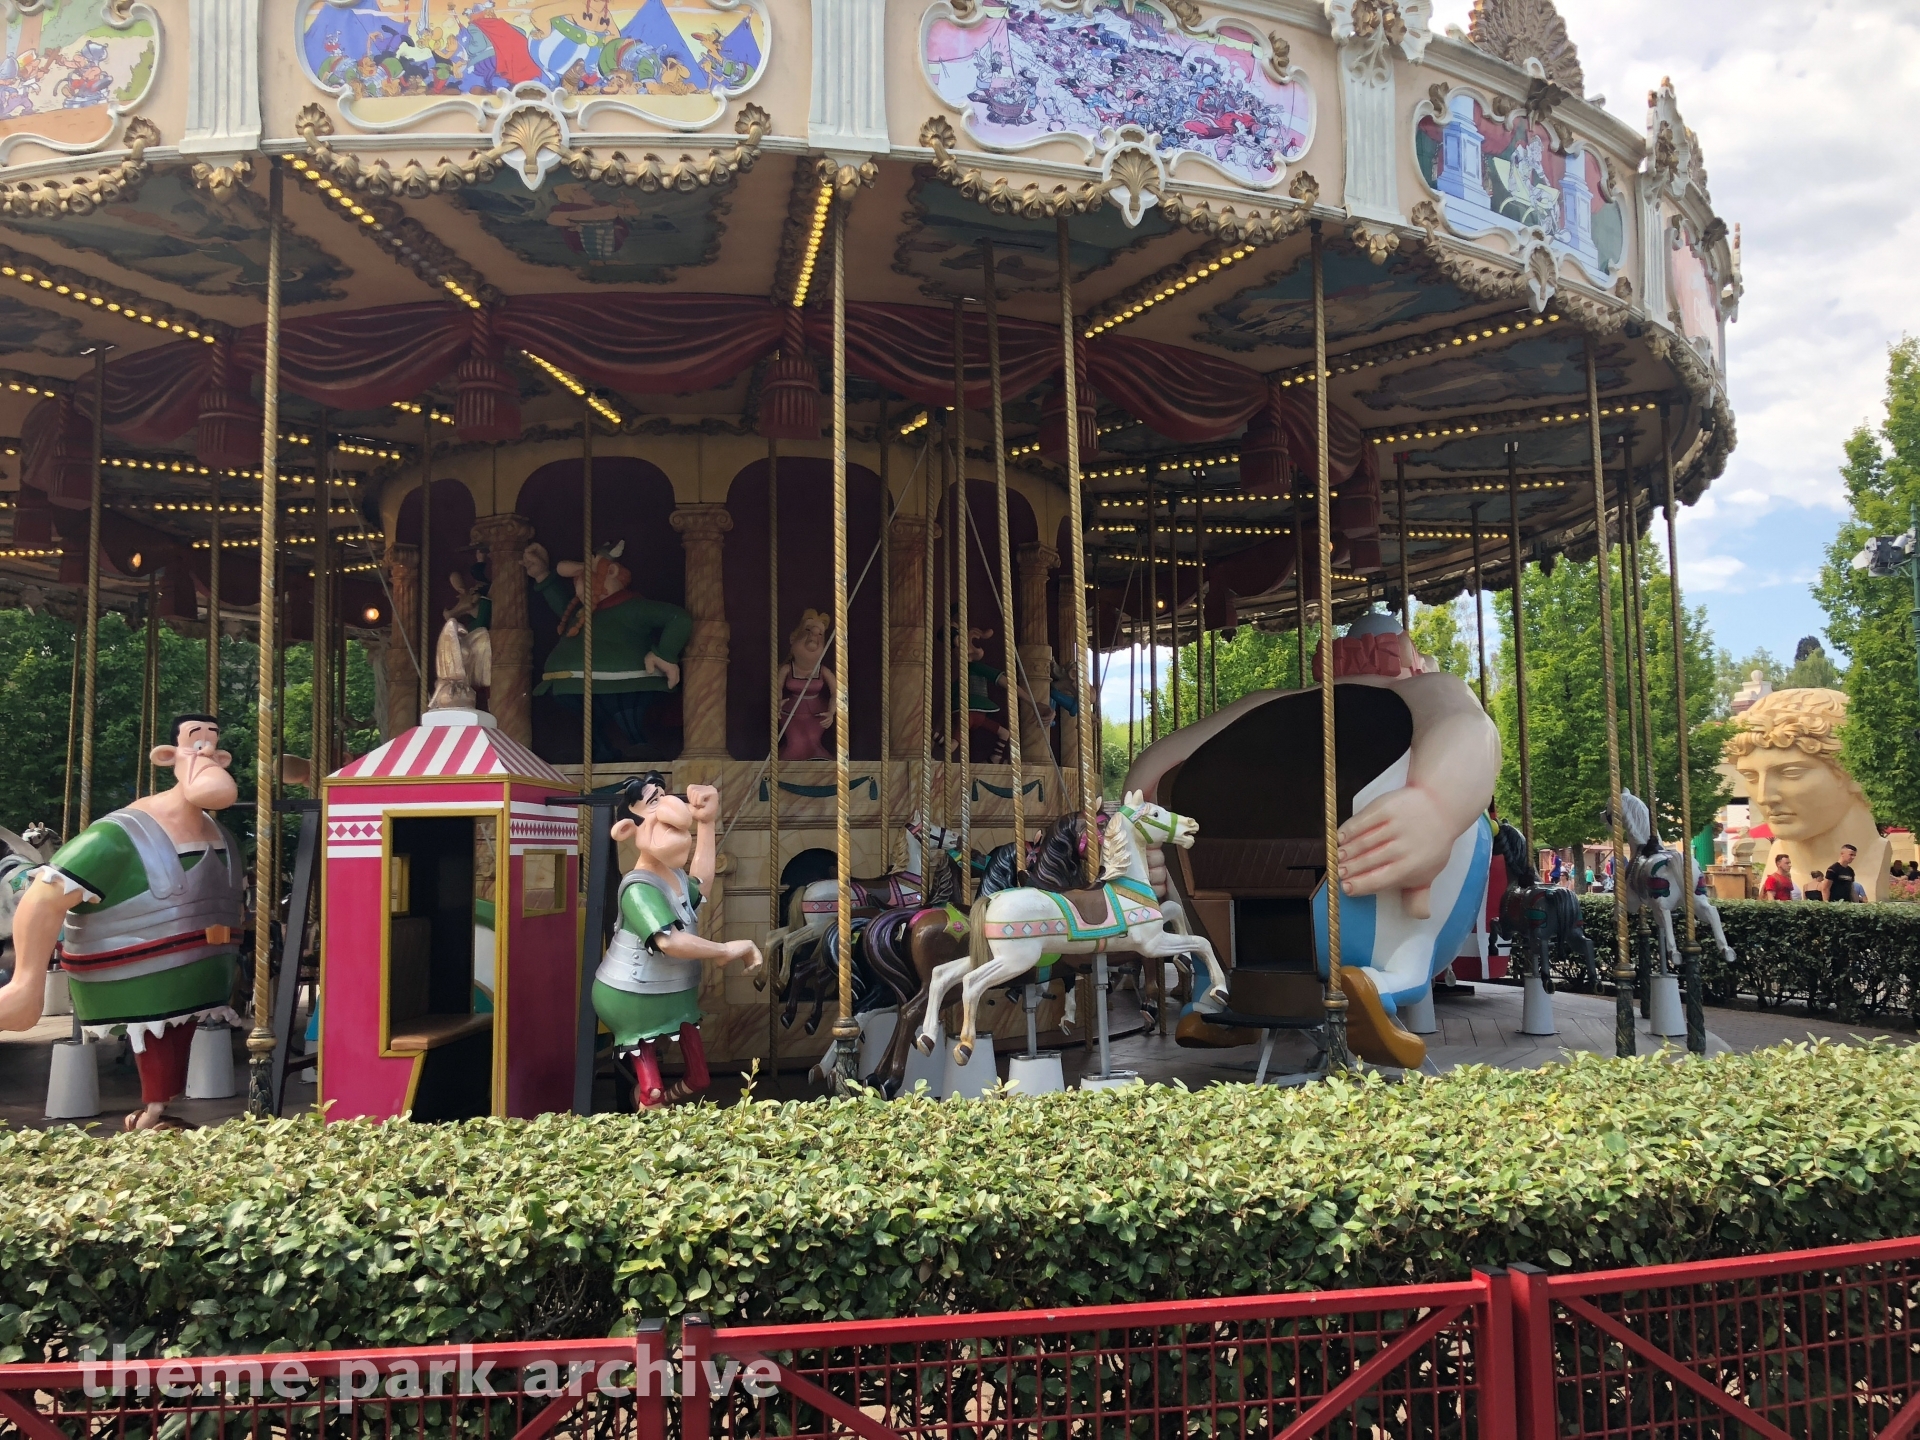 Le Carrousel De Cesar at Parc Asterix